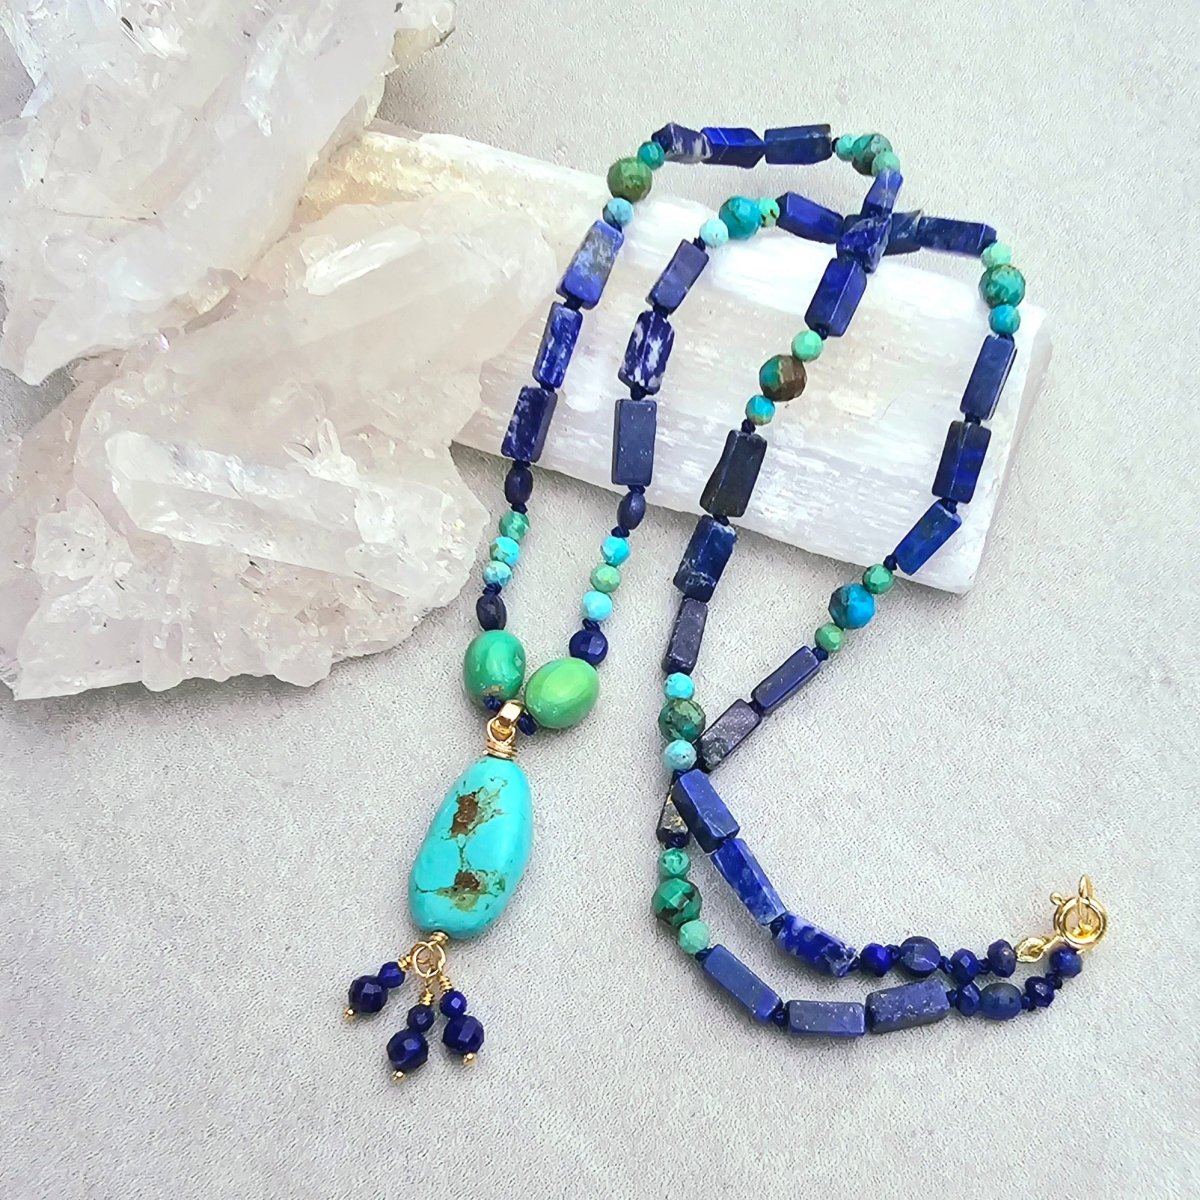 Turquoise & Lapis Necklace #8069James & JezebelleNecklace